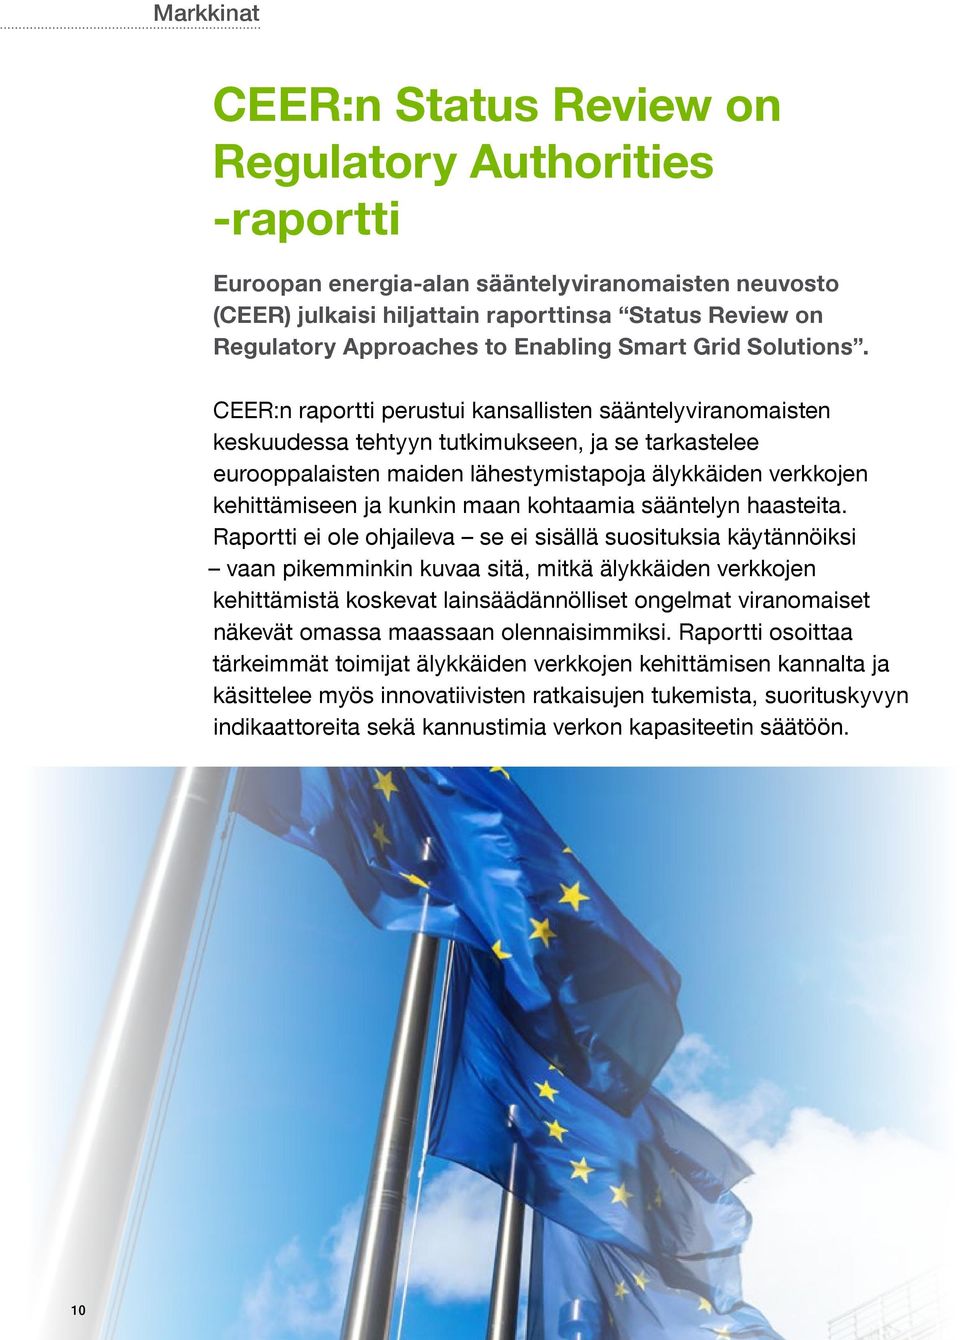 CEER:n raportti perustui kansallisten sääntelyviranomaisten keskuudessa tehtyyn tutkimukseen, ja se tarkastelee eurooppalaisten maiden lähestymistapoja älykkäiden verkkojen kehittämiseen ja kunkin